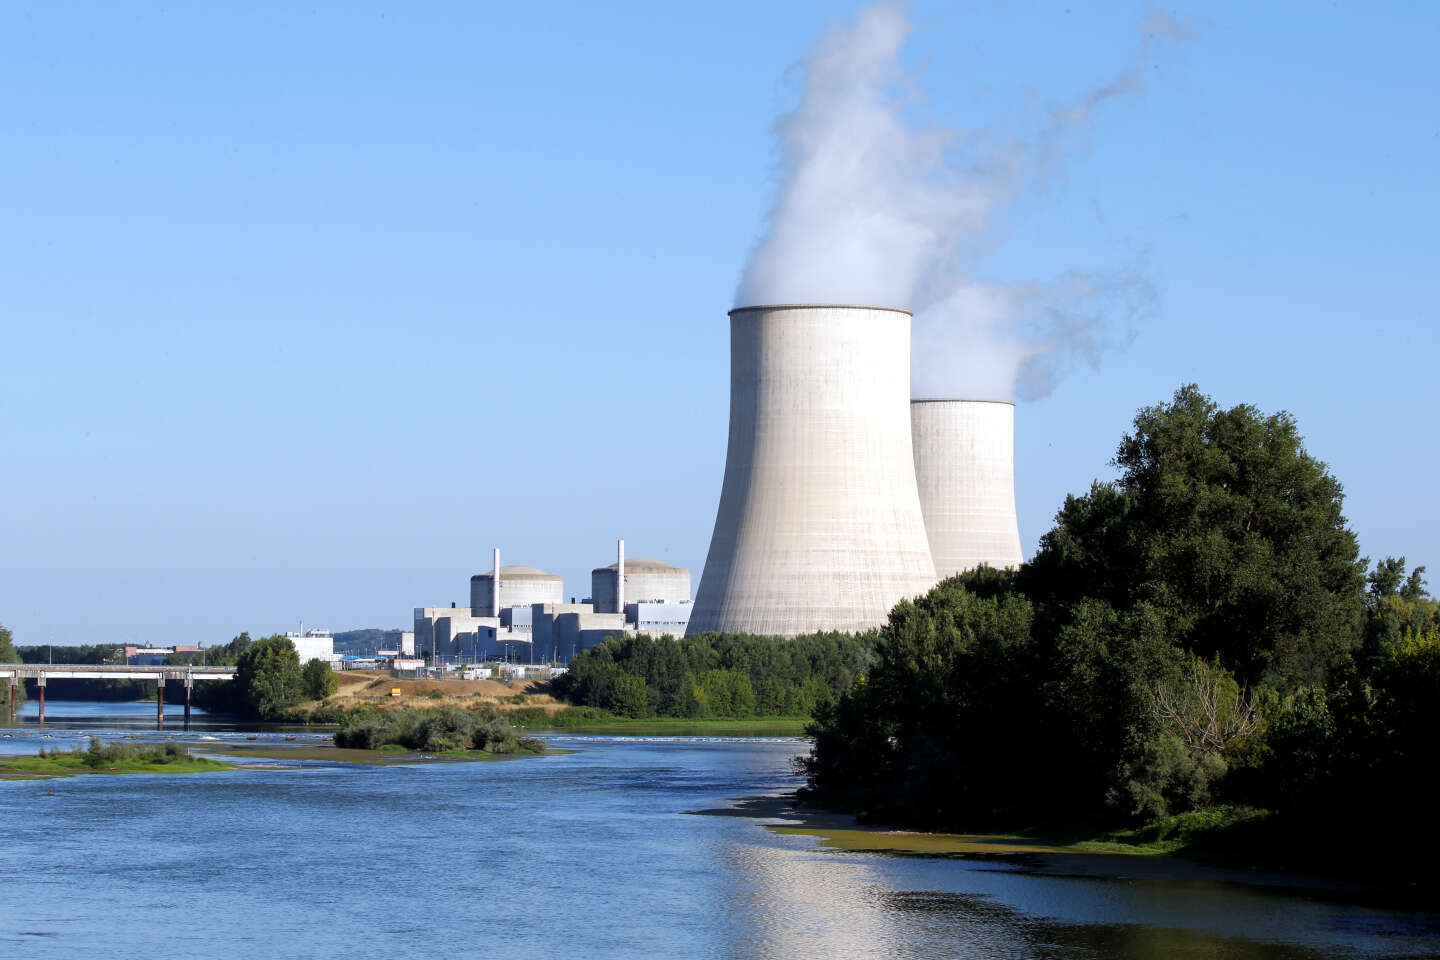 La consommation d’eau des centrales nucléaires françaises en débat